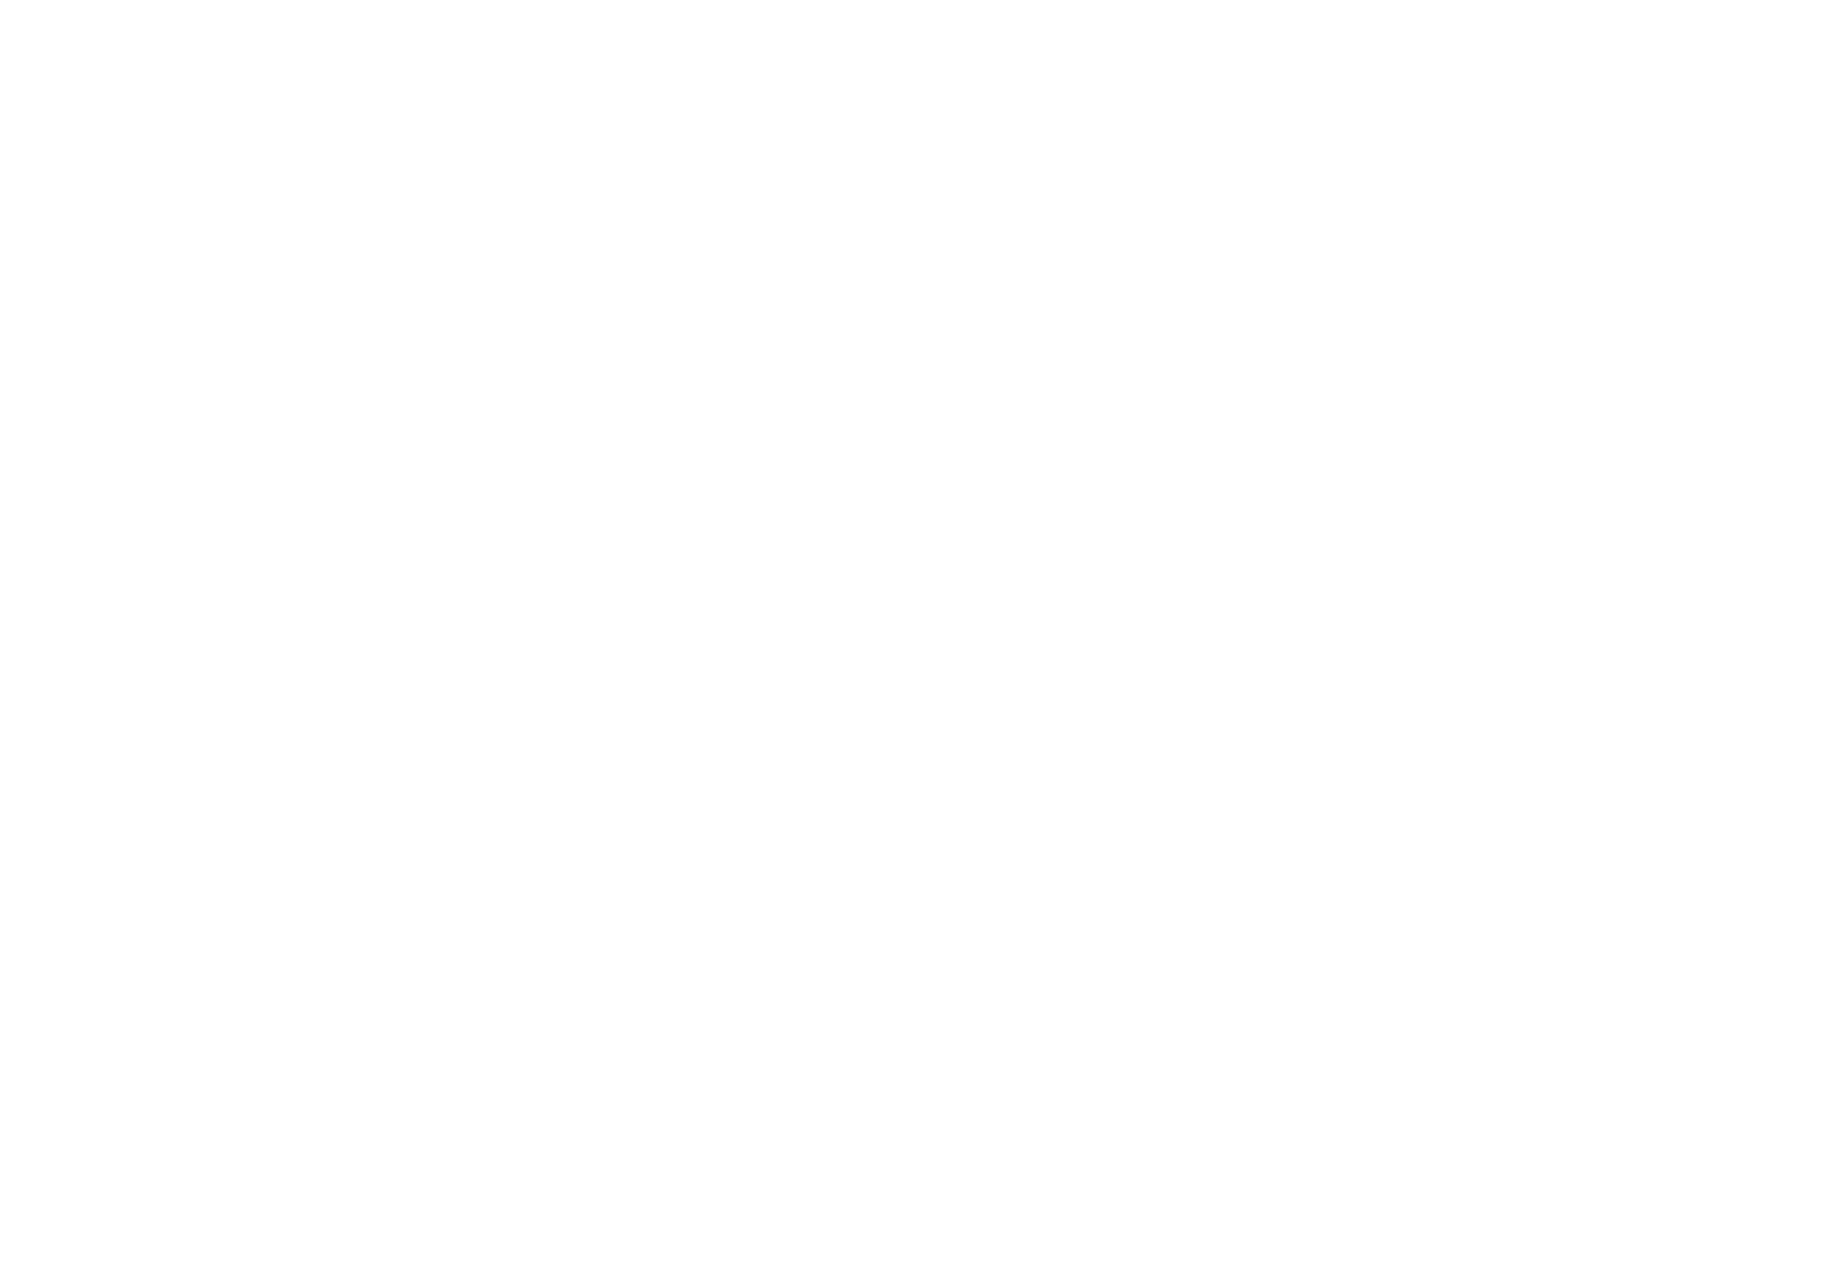 A Love Song logo